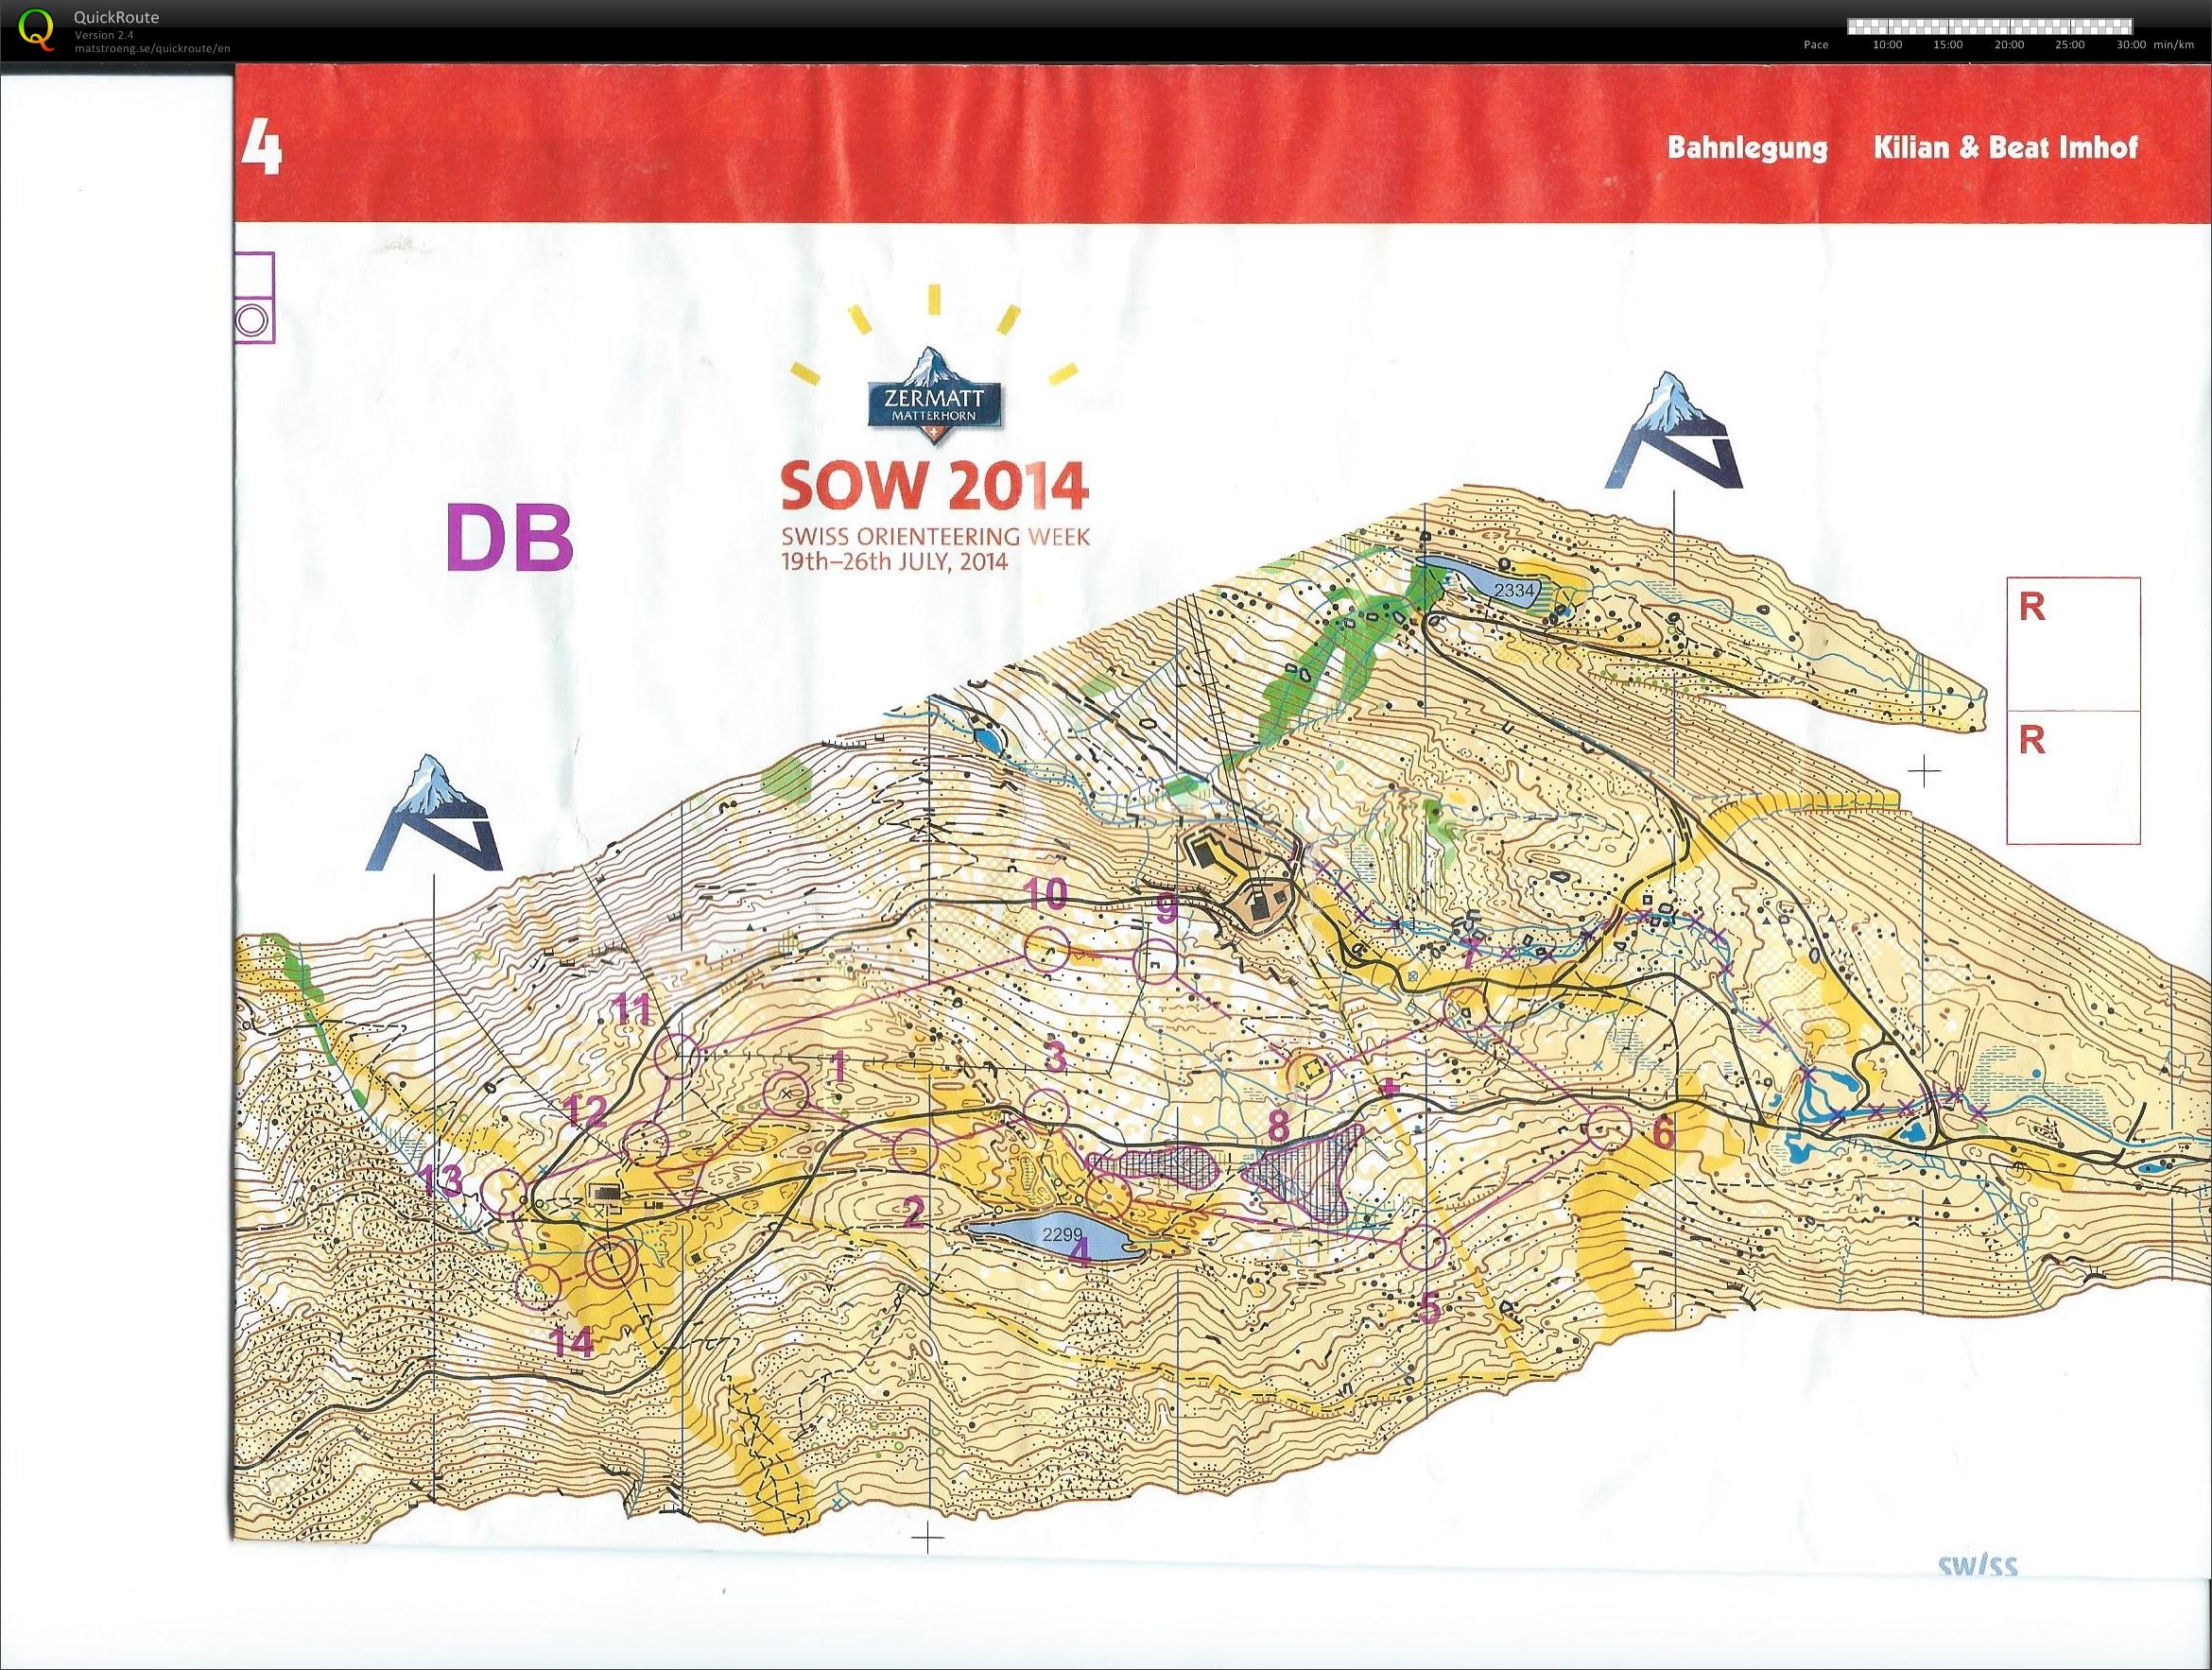 Swiss O-week etape 4 (24.07.2014)